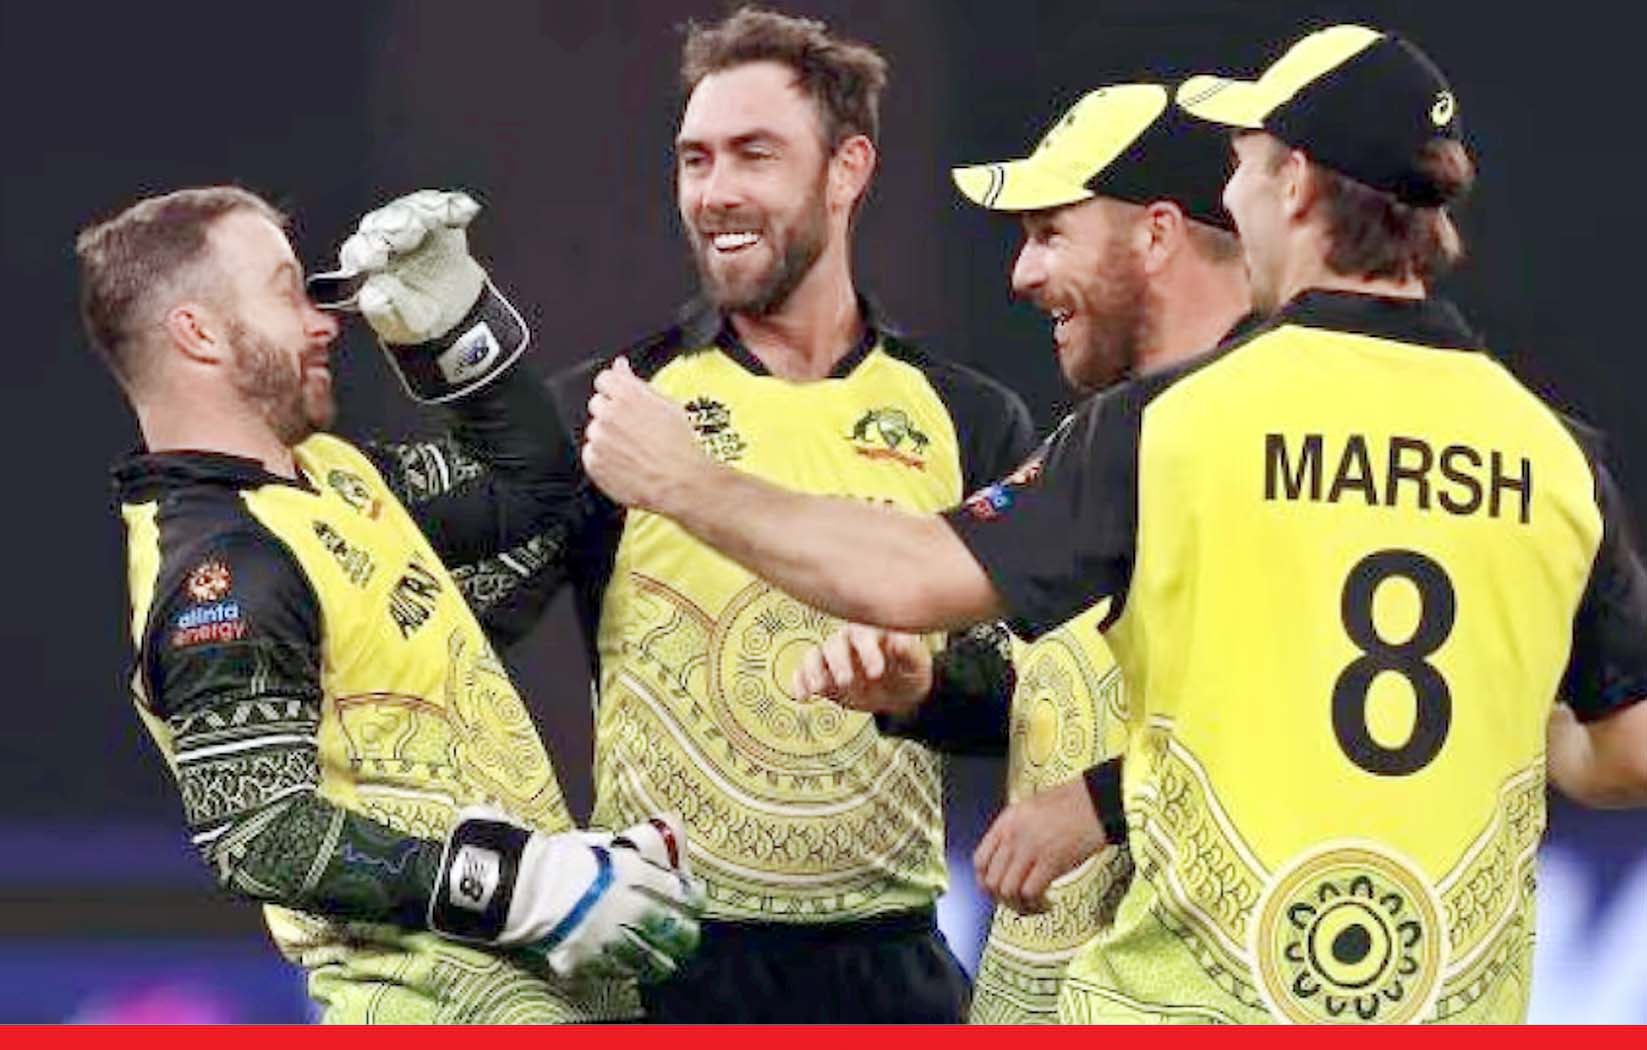 भारत के खिलाफ ODI सीरीज के लिए ऑस्ट्रेलियाई टीम का ऐलान, मैक्सवेल की वापसी